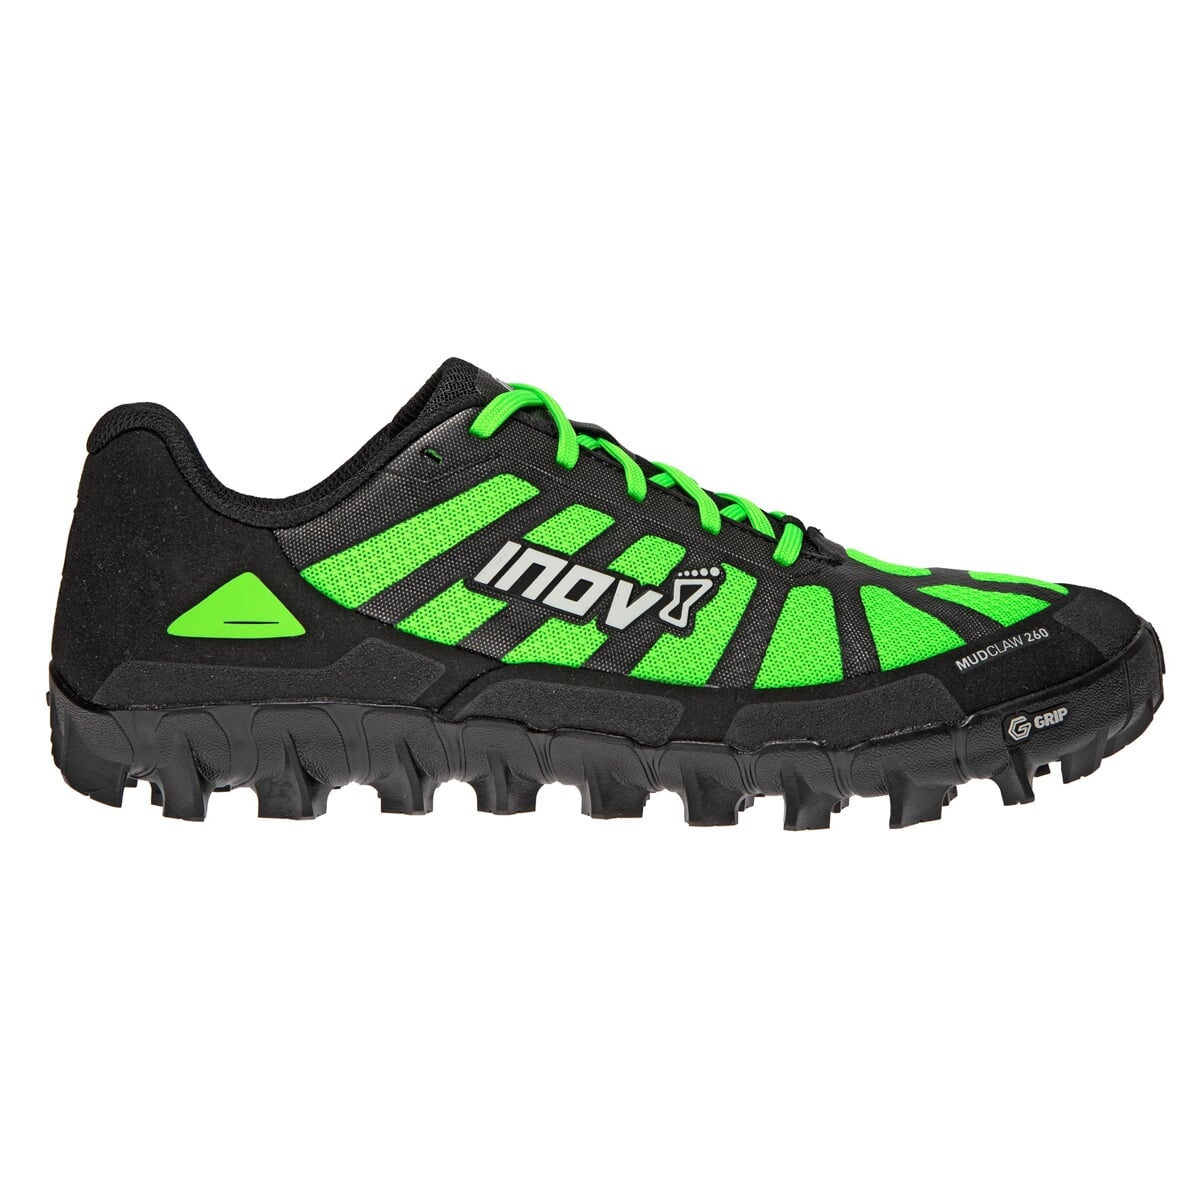 Pánské krosové boty Inov-8 Mudclaw G 260 (P) 2.0 zelená/černá 8,5 UK